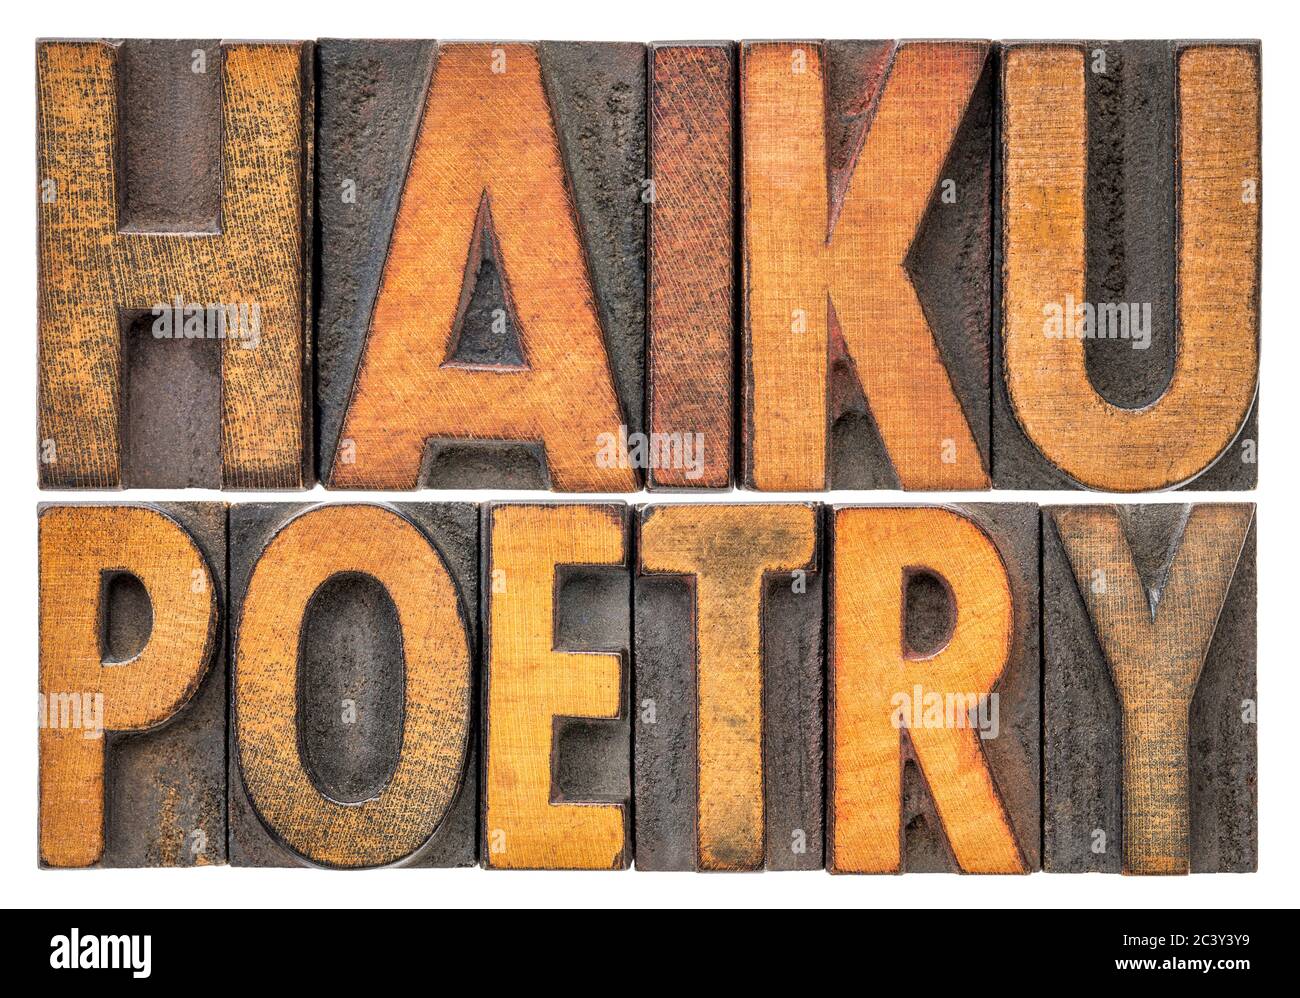 haiku Poesie - eine sehr kurze Form der japanischen Poesie - isoliert Wort abstrakt in Vintage-Buchdruck-Druckblöcke Stockfoto